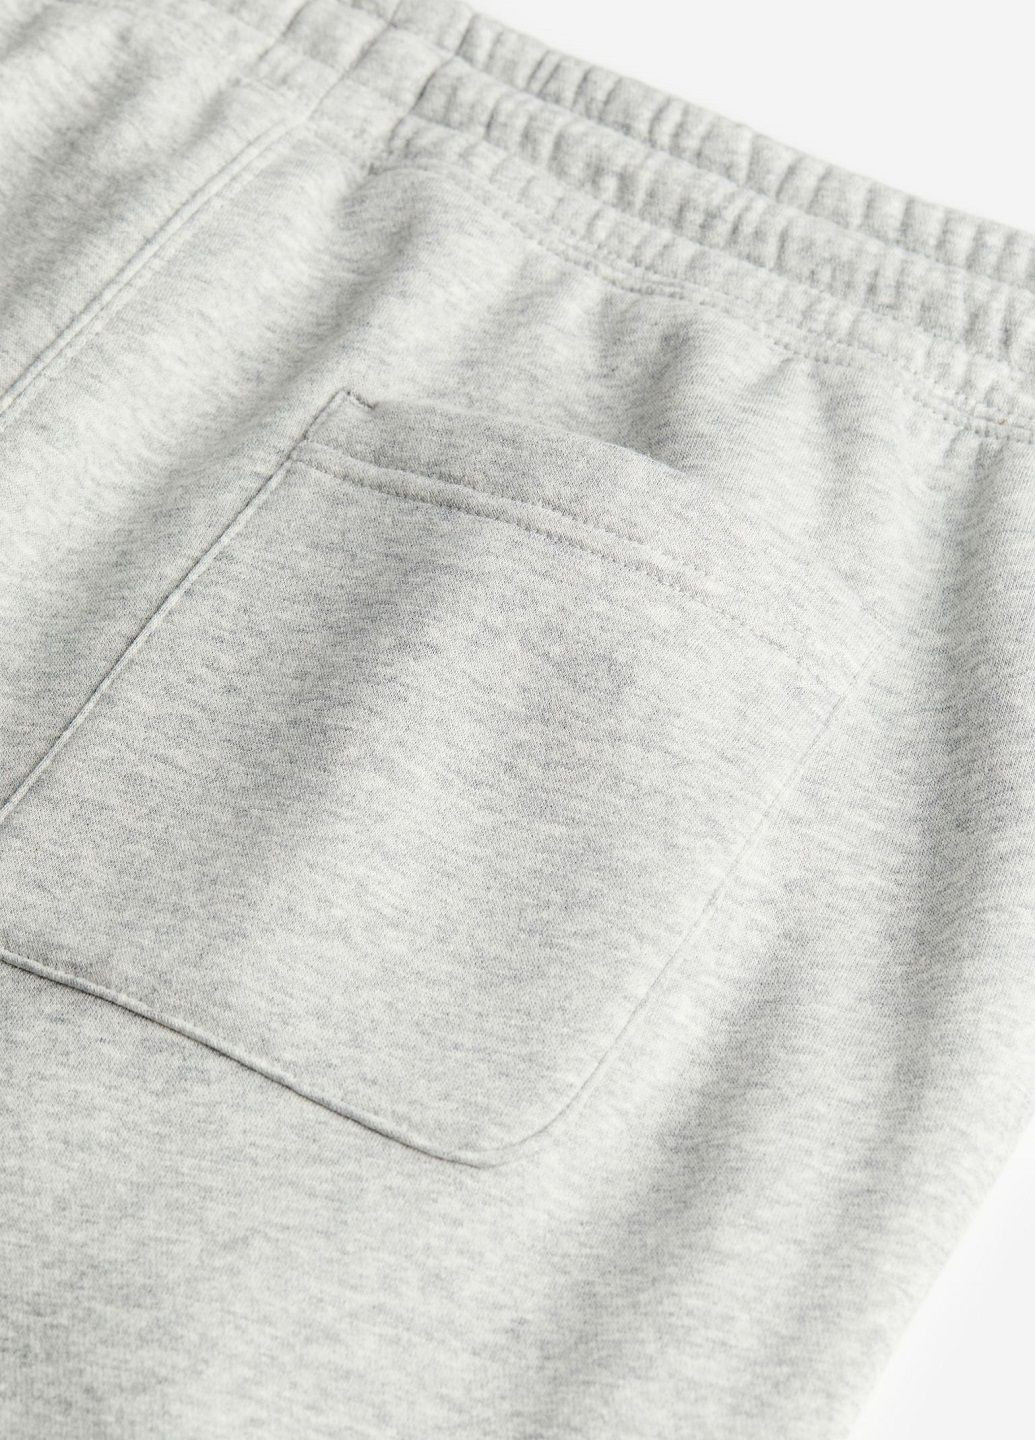 Серые спортивные демисезонные брюки H&M